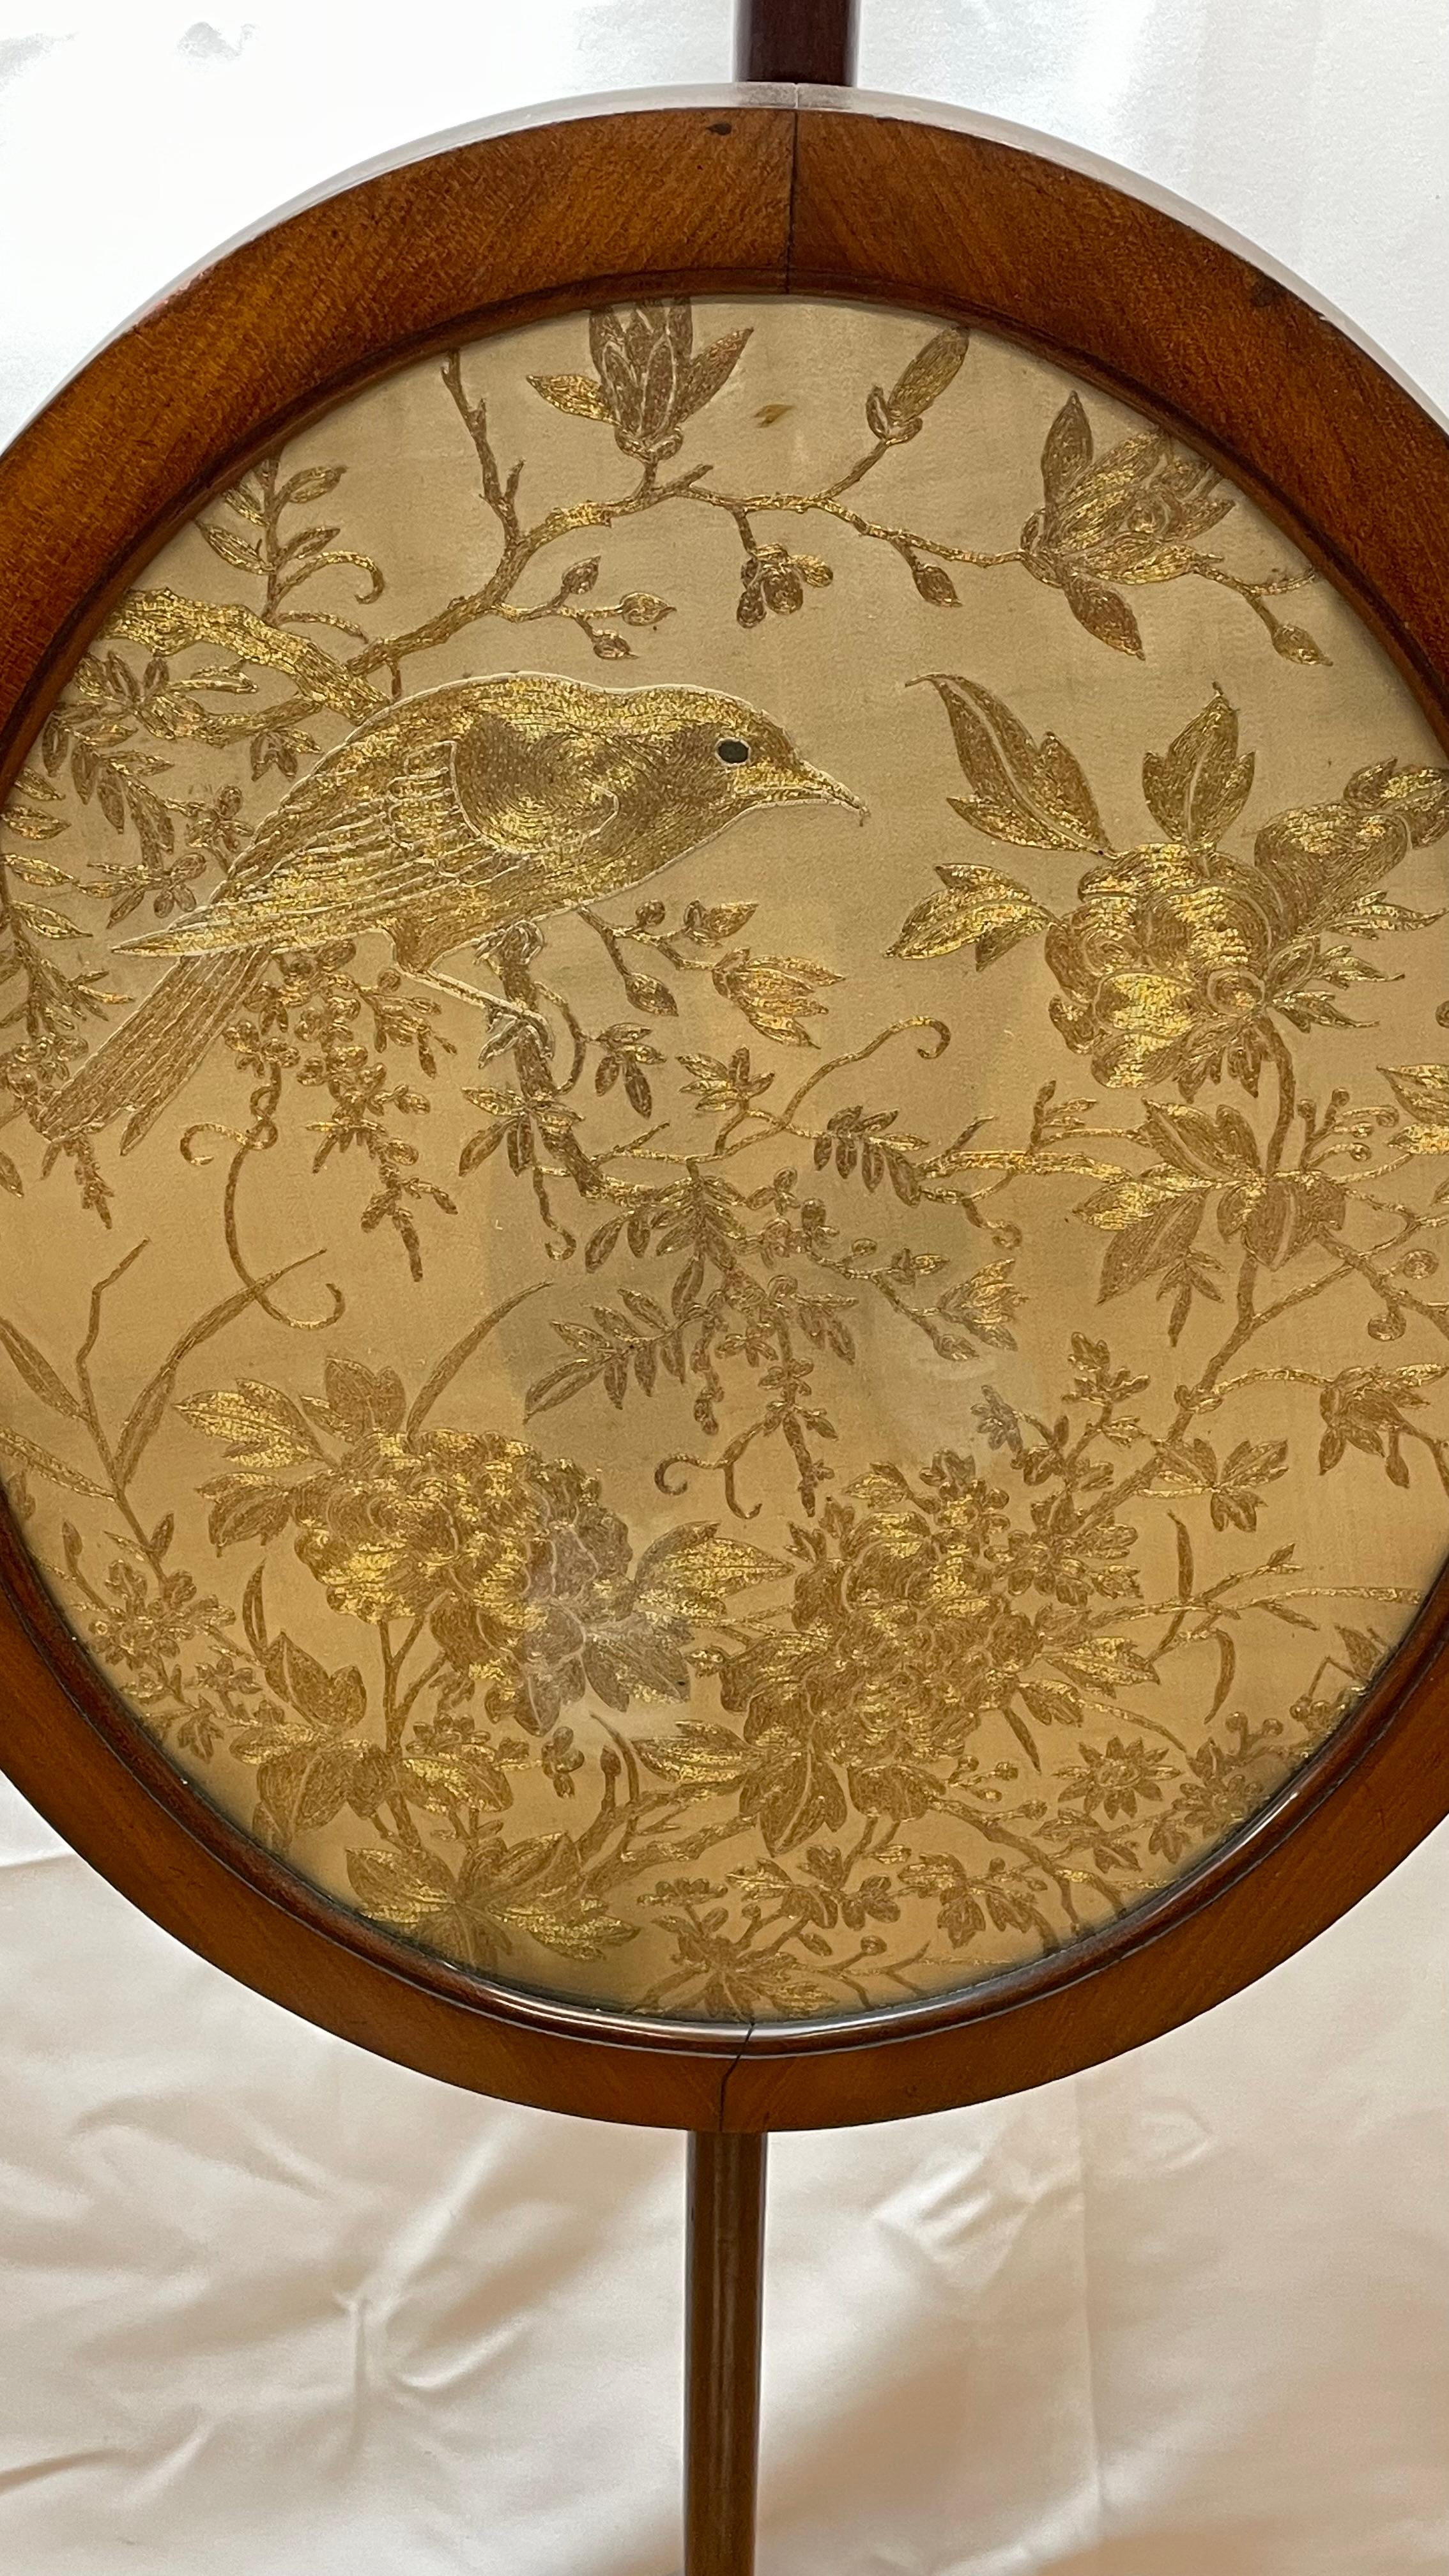 Kaminschirm im föderalen Stil des 19. Jahrhunderts mit Messingfüßen, seidengestickten Vögeln und Blumen mit Goldfäden. Hat Eichelknöpfe.

